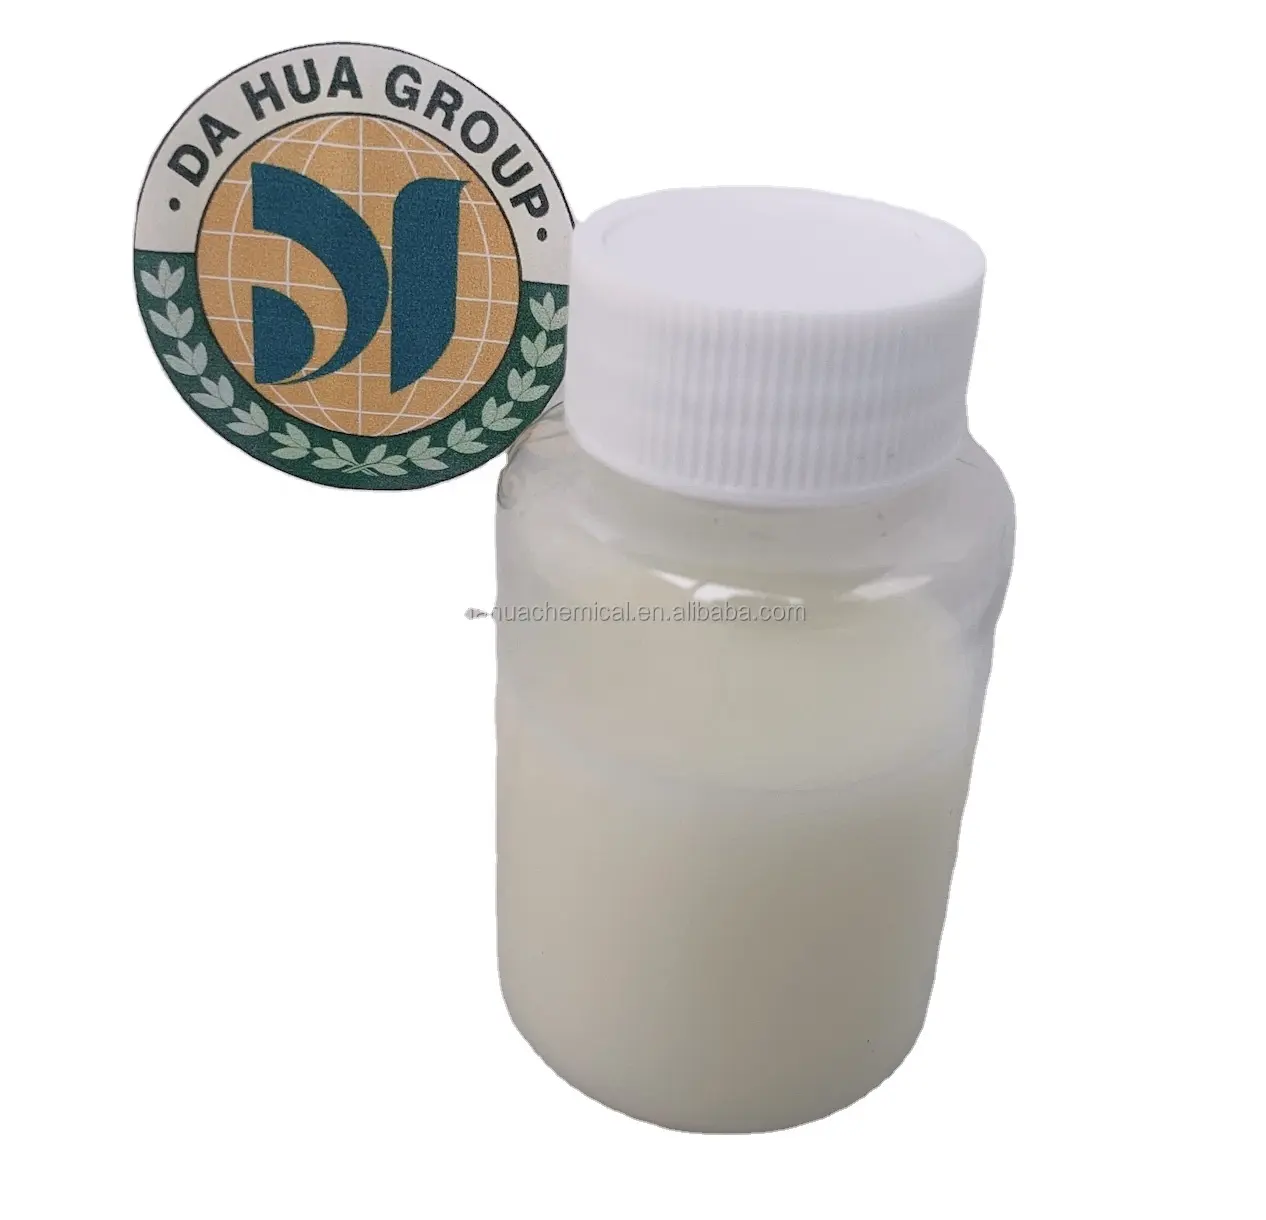 Agente de acabado suavizante de emulsión de aceite de silicona, agente auxiliar químico para fibra cortada de poliéster hueca, mejora la suavidad esponjosa